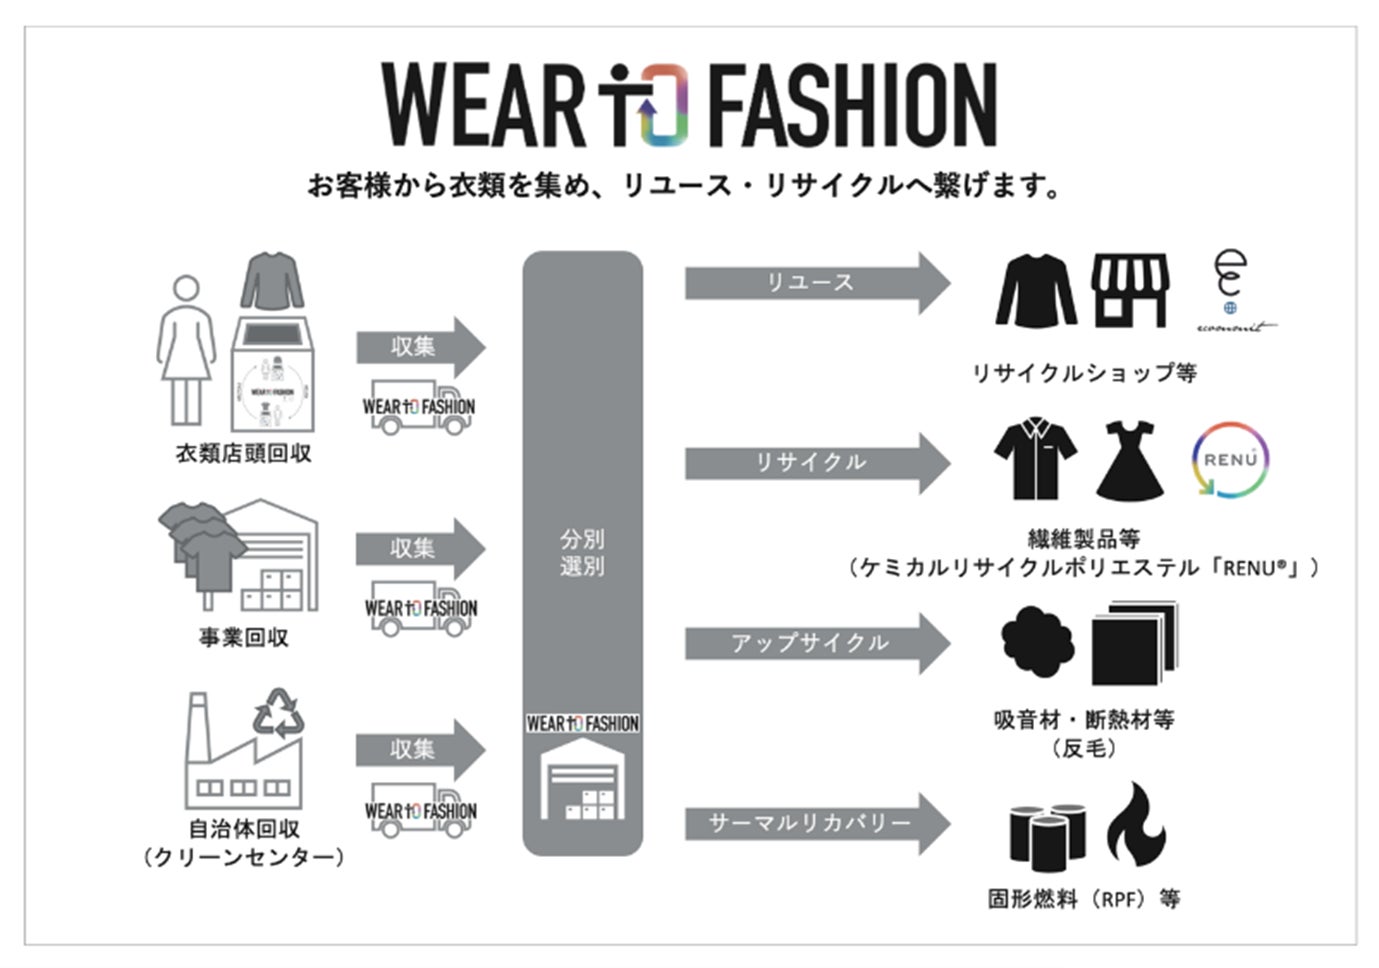 伊藤忠とエコミットが共同で展開するファッションのリユース・リサイクルプロジェクト『Wear to Fashion』に老舗ウールメーカーの三星毛糸が参画のサブ画像3